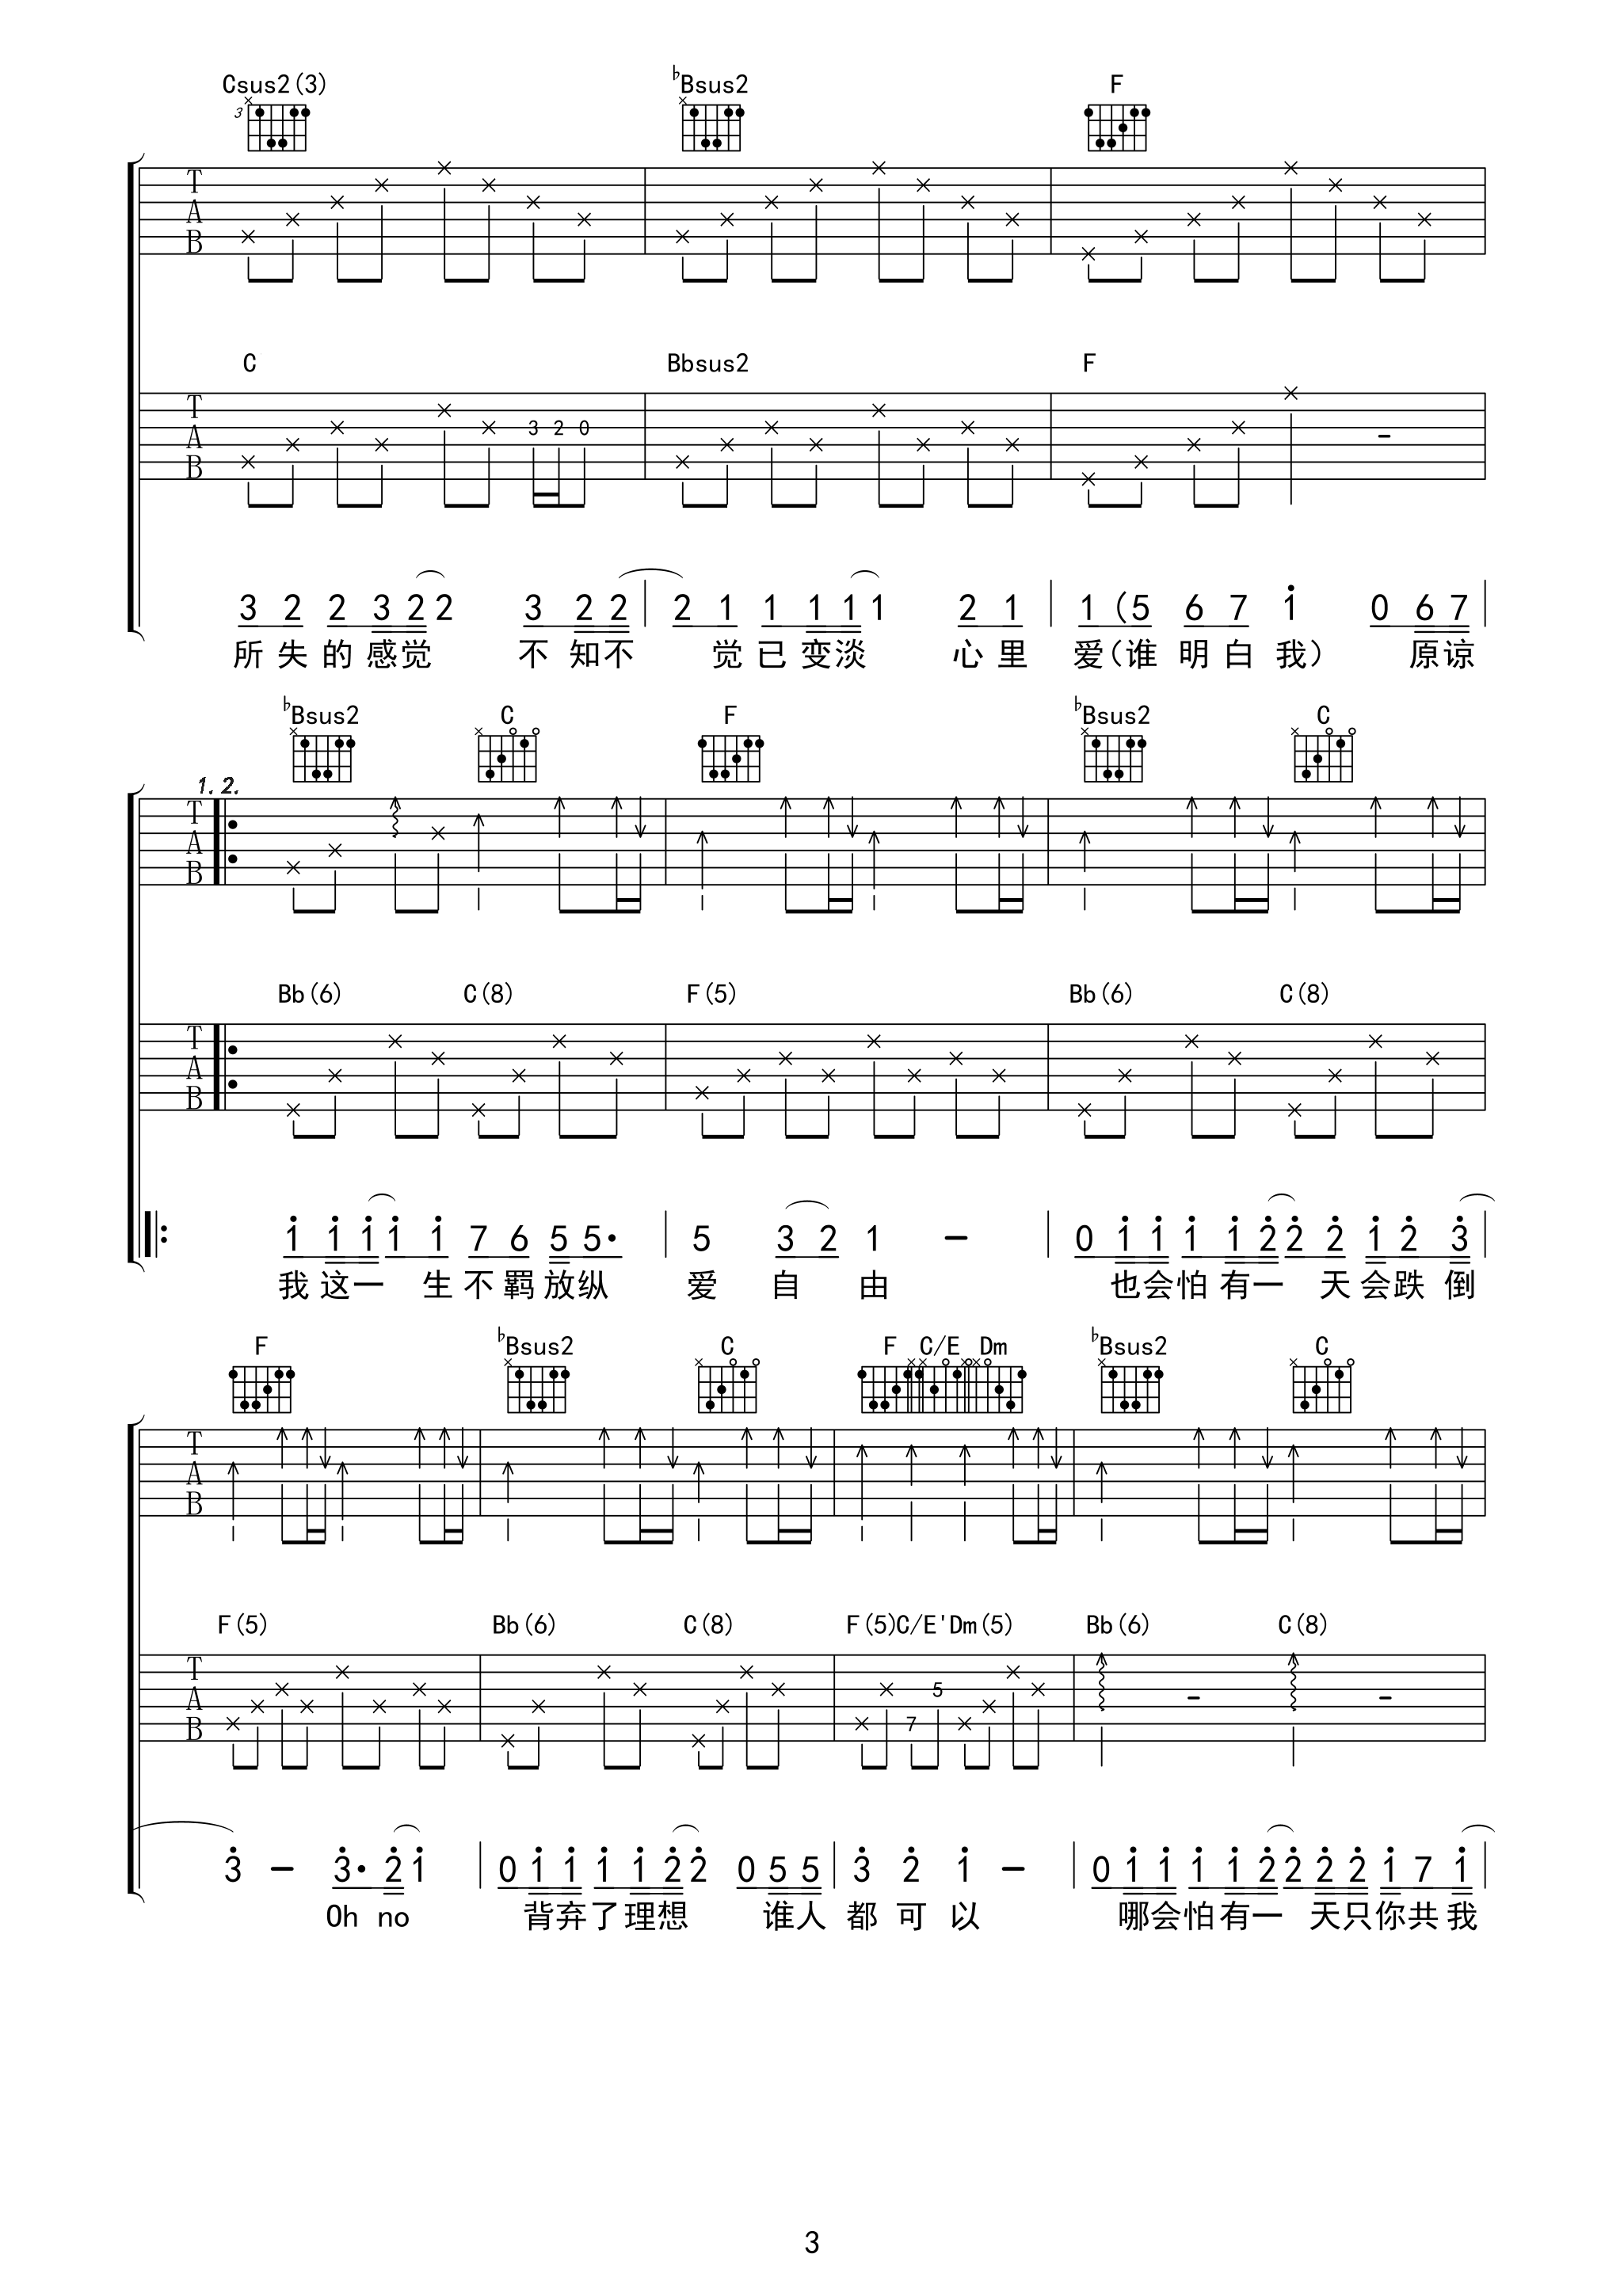 海阔天空吉他谱93版不插电弦心距出品吉他谱第(3)页